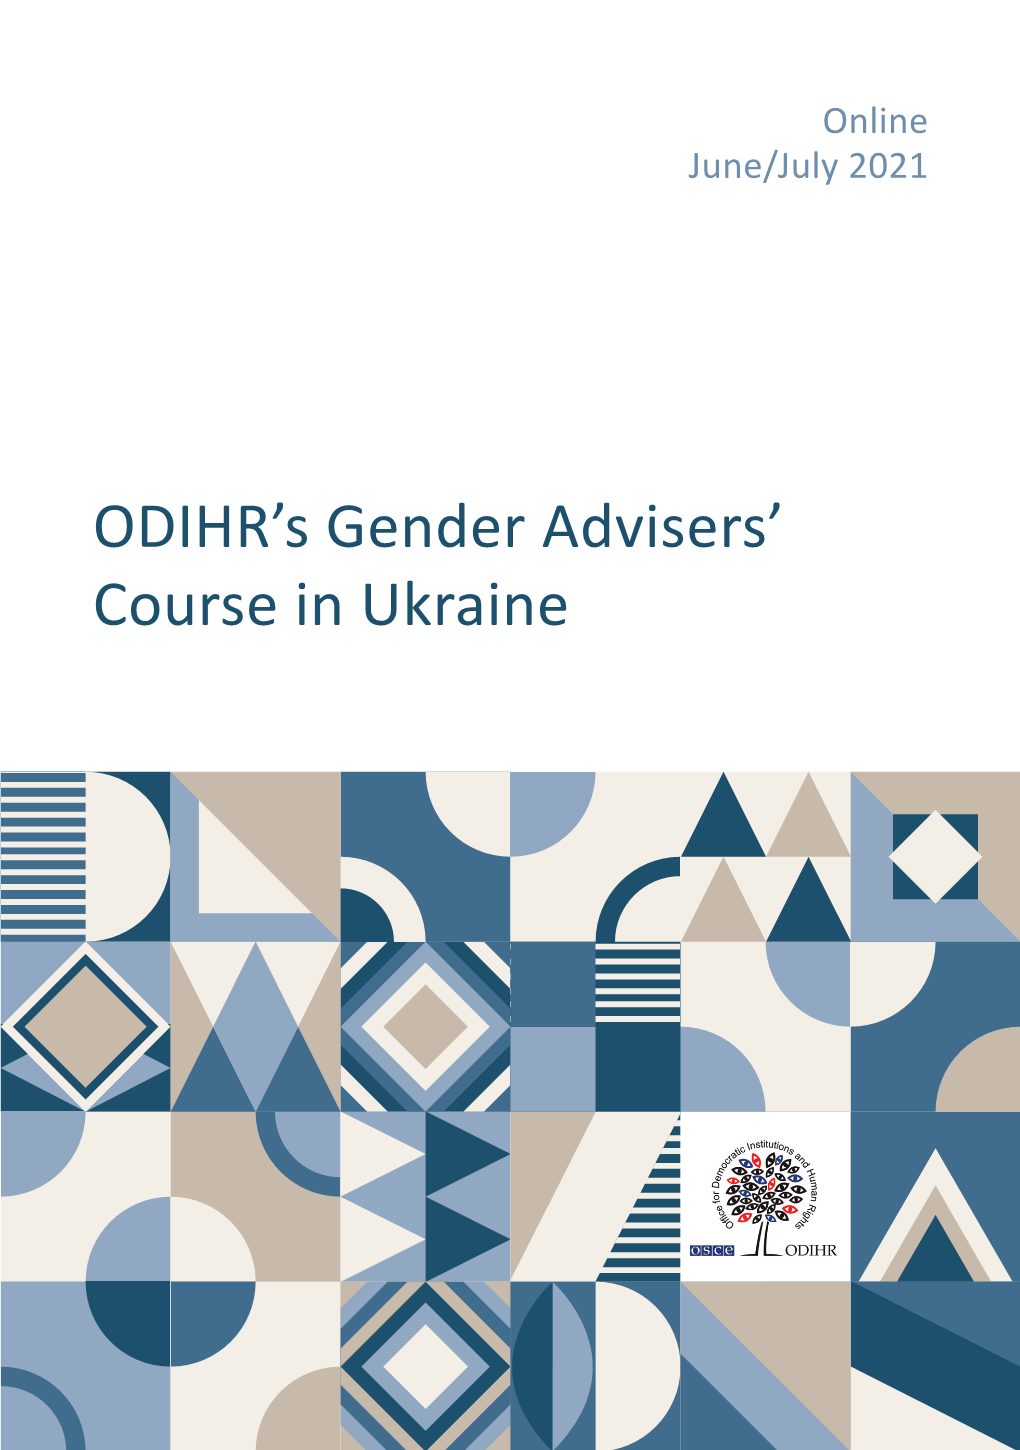 ODIHR's Gender Advisers' Course in Ukraine